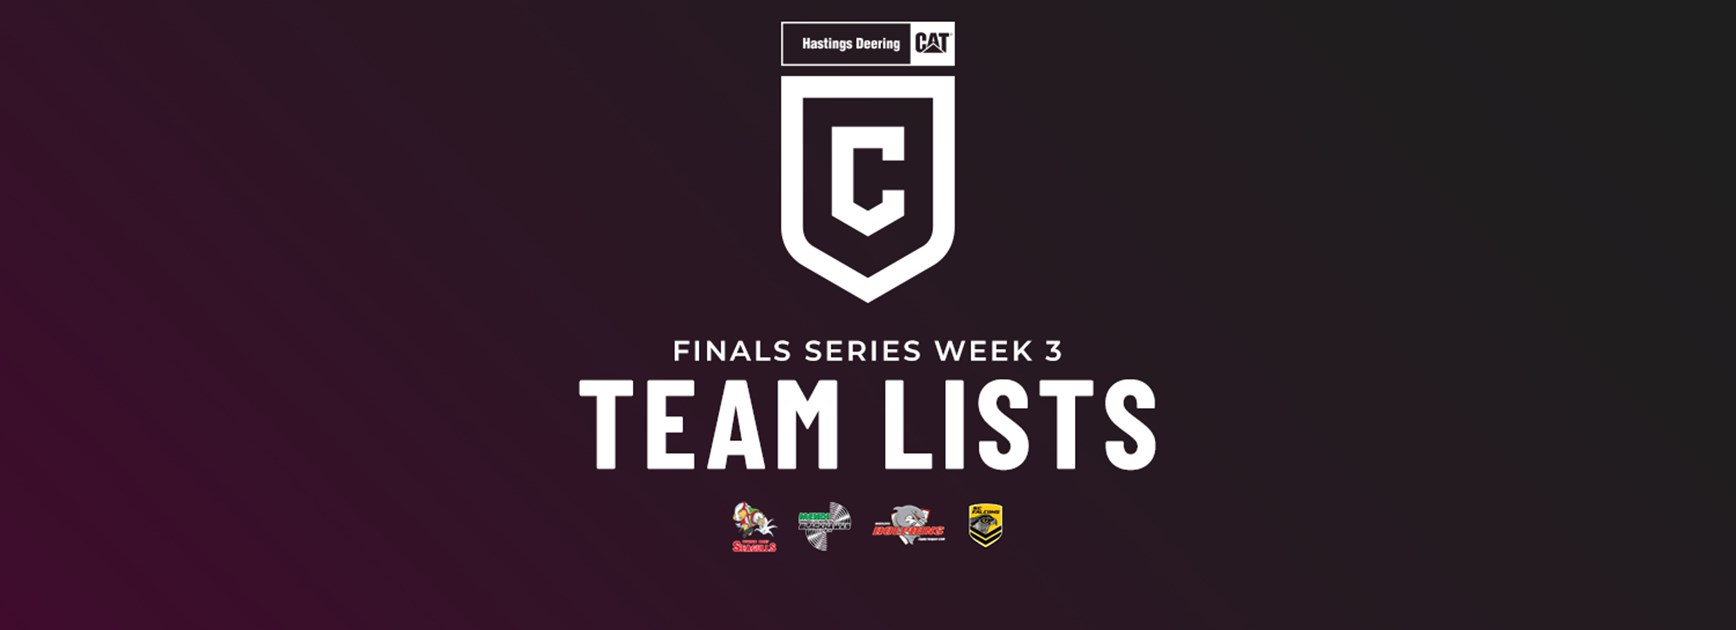 Hastings Deering Colts Finals Week 3 team lists